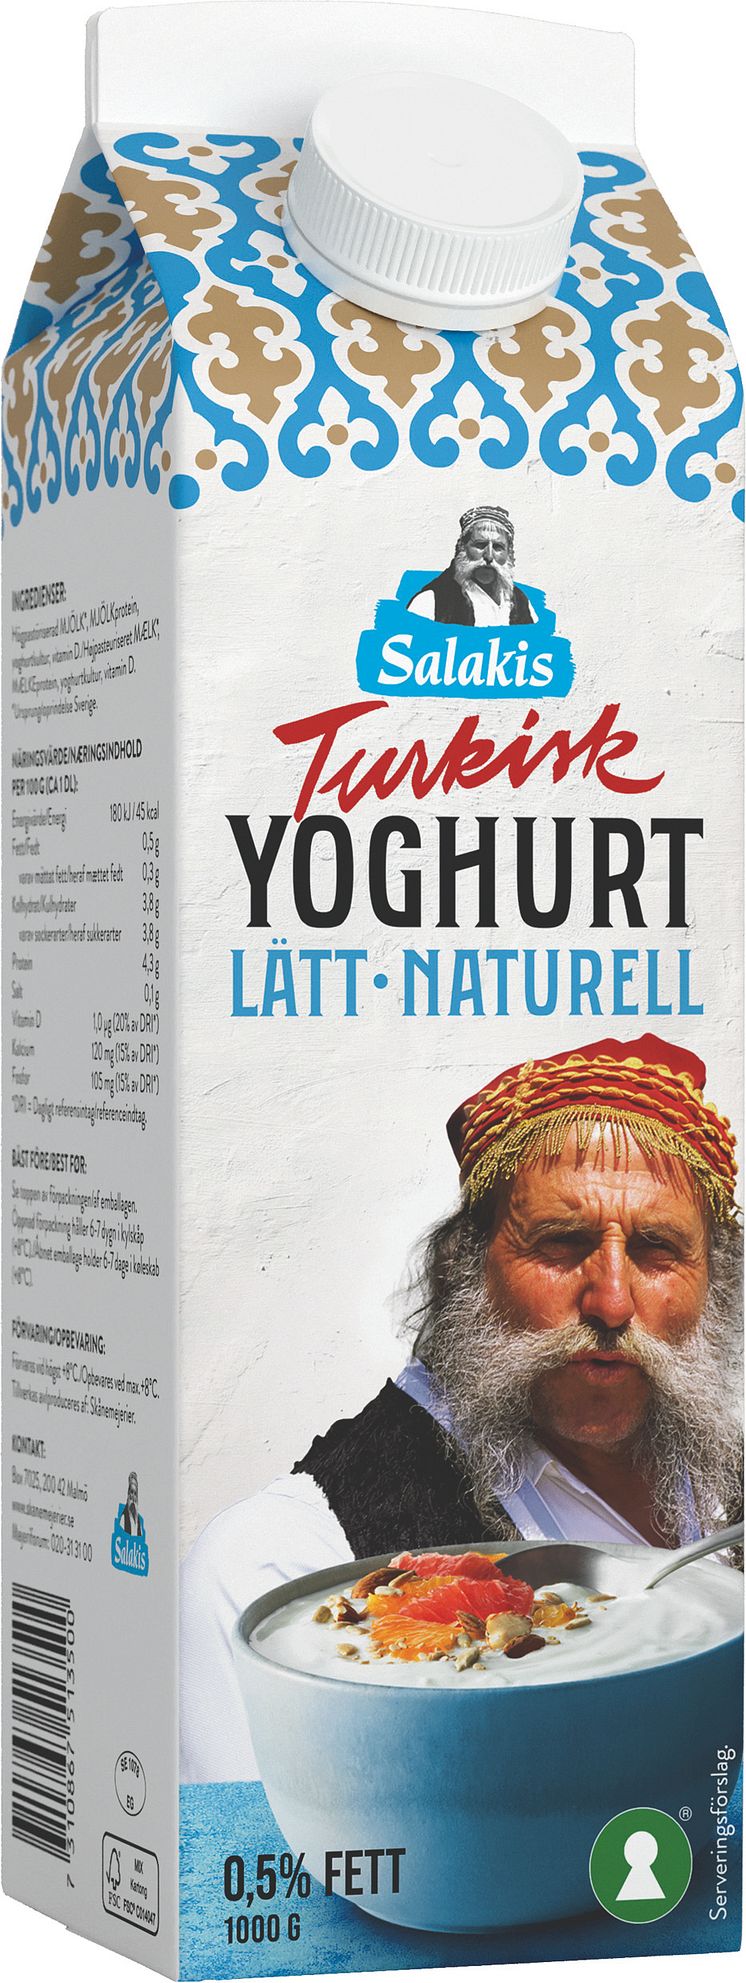 SKAN2007_Turkisk_Yoghurt_Latt_Naturell_1000g_1